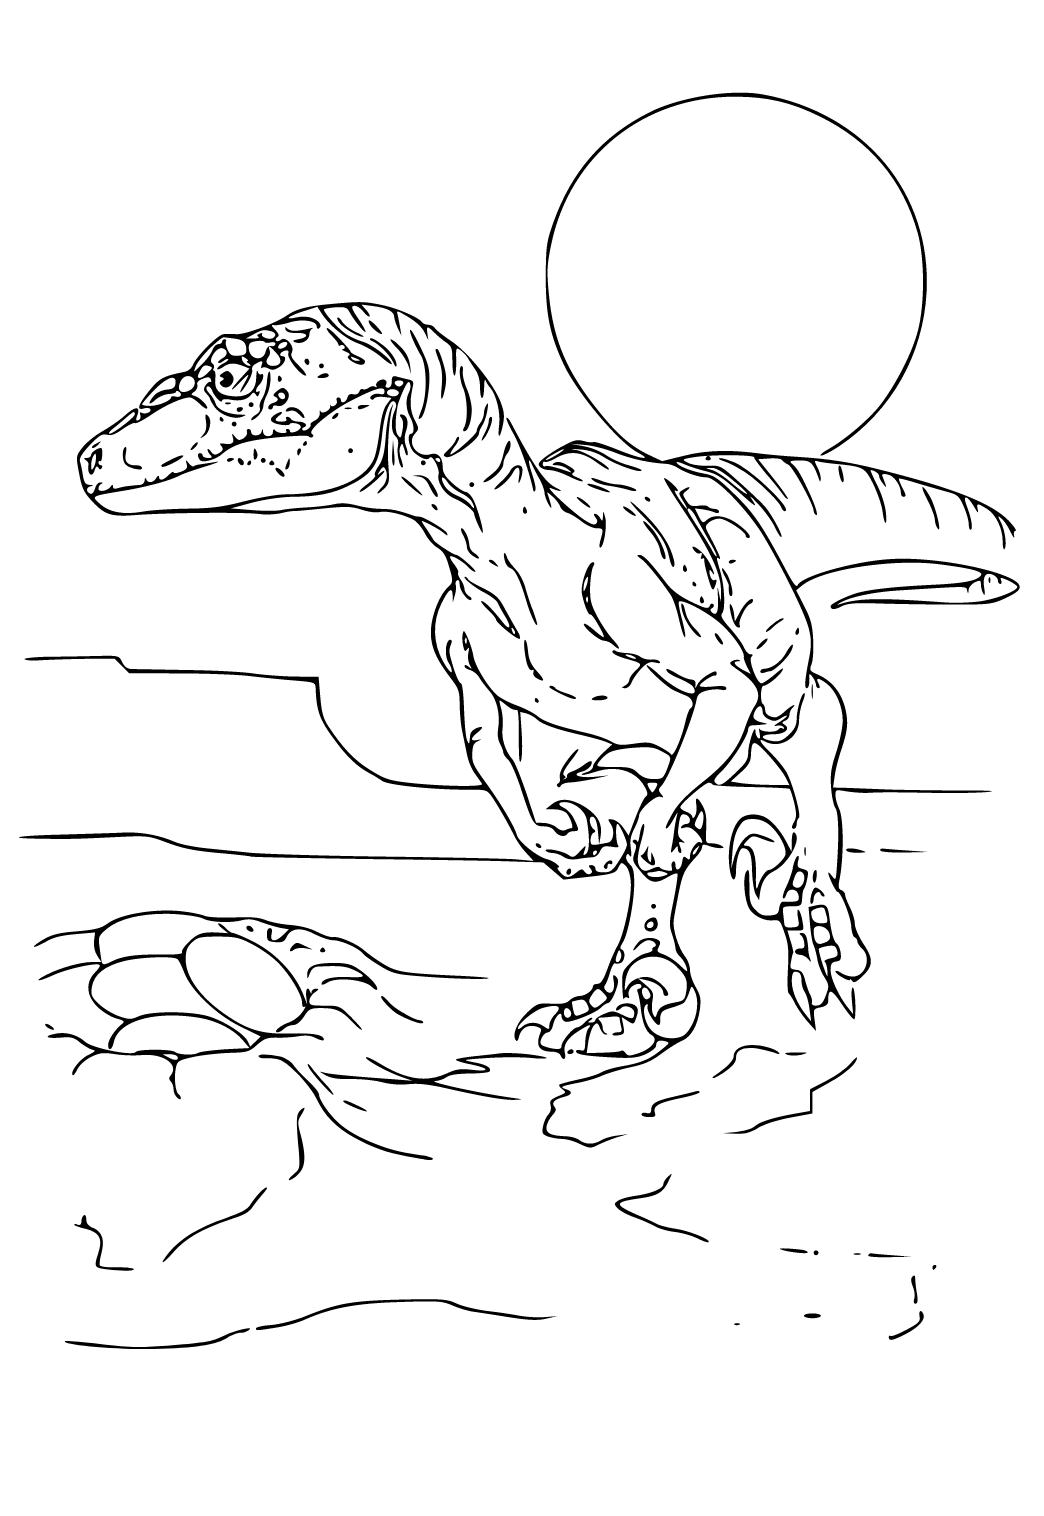 Velociraptor da colorare - Dinosauri - Disegni da colorare per adulti